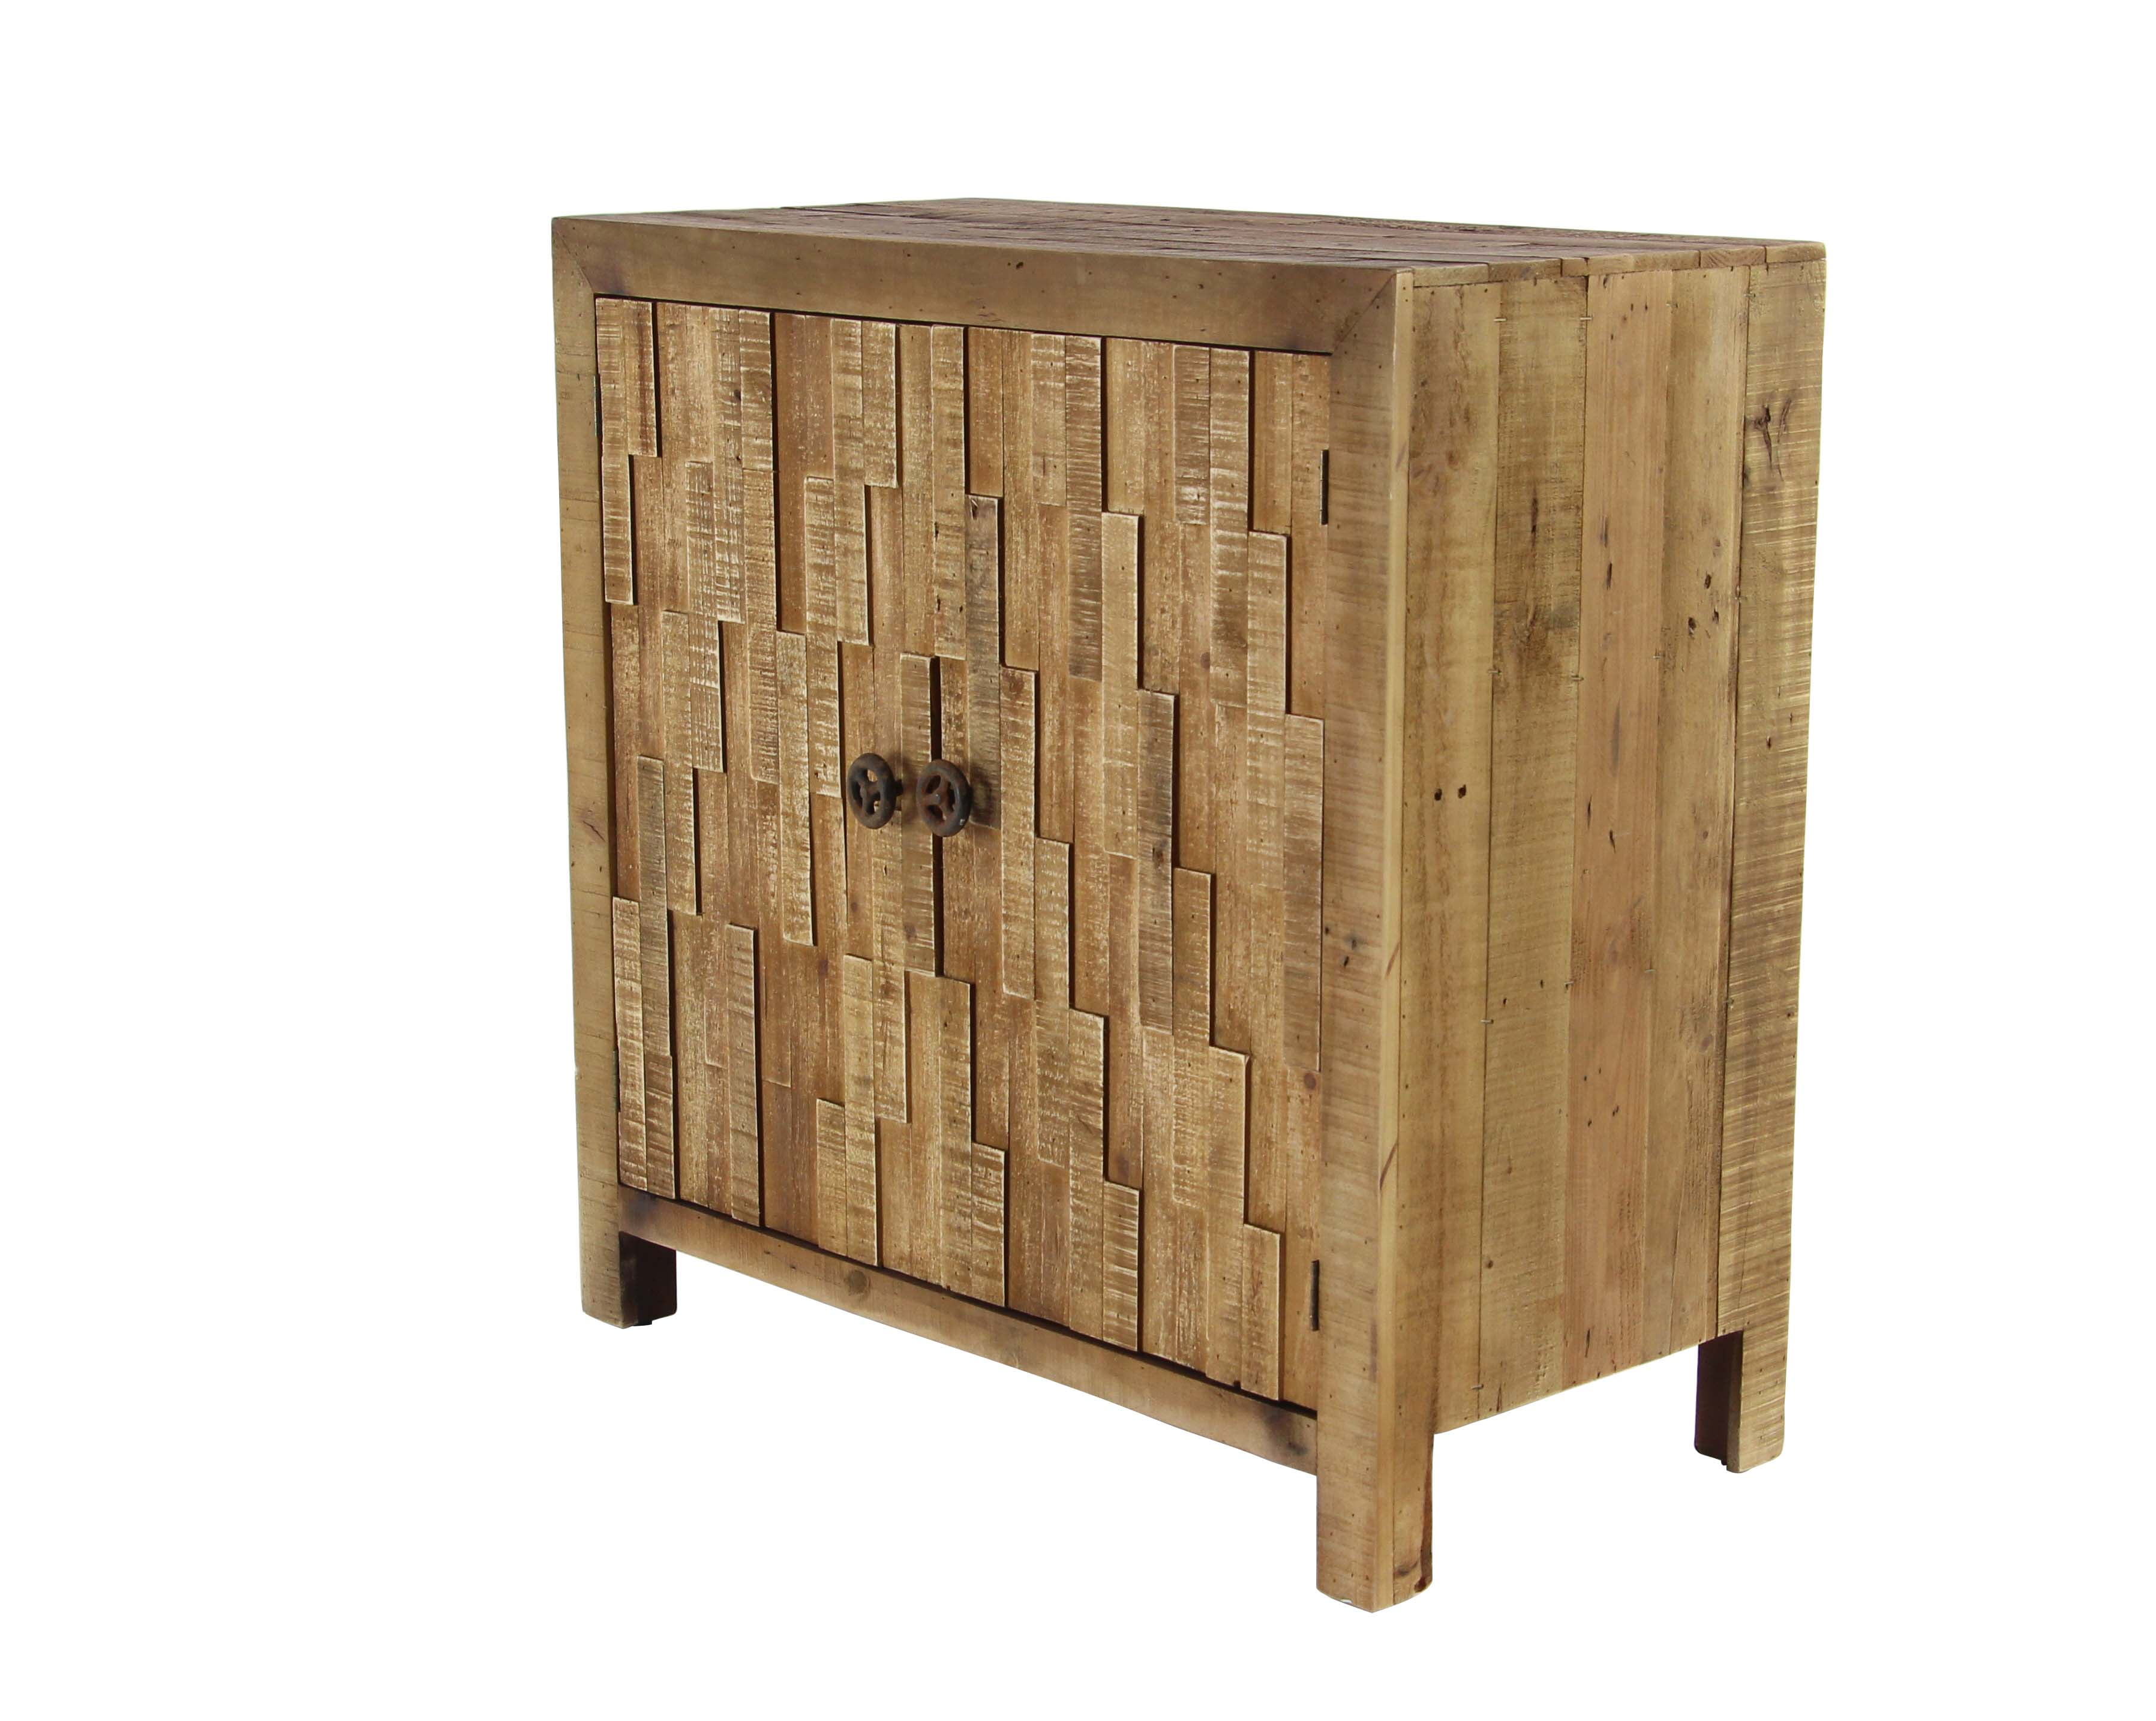 Decmode Rustic 2-Door Wooden Textured Cabinet, Brown - Walmart.com ...